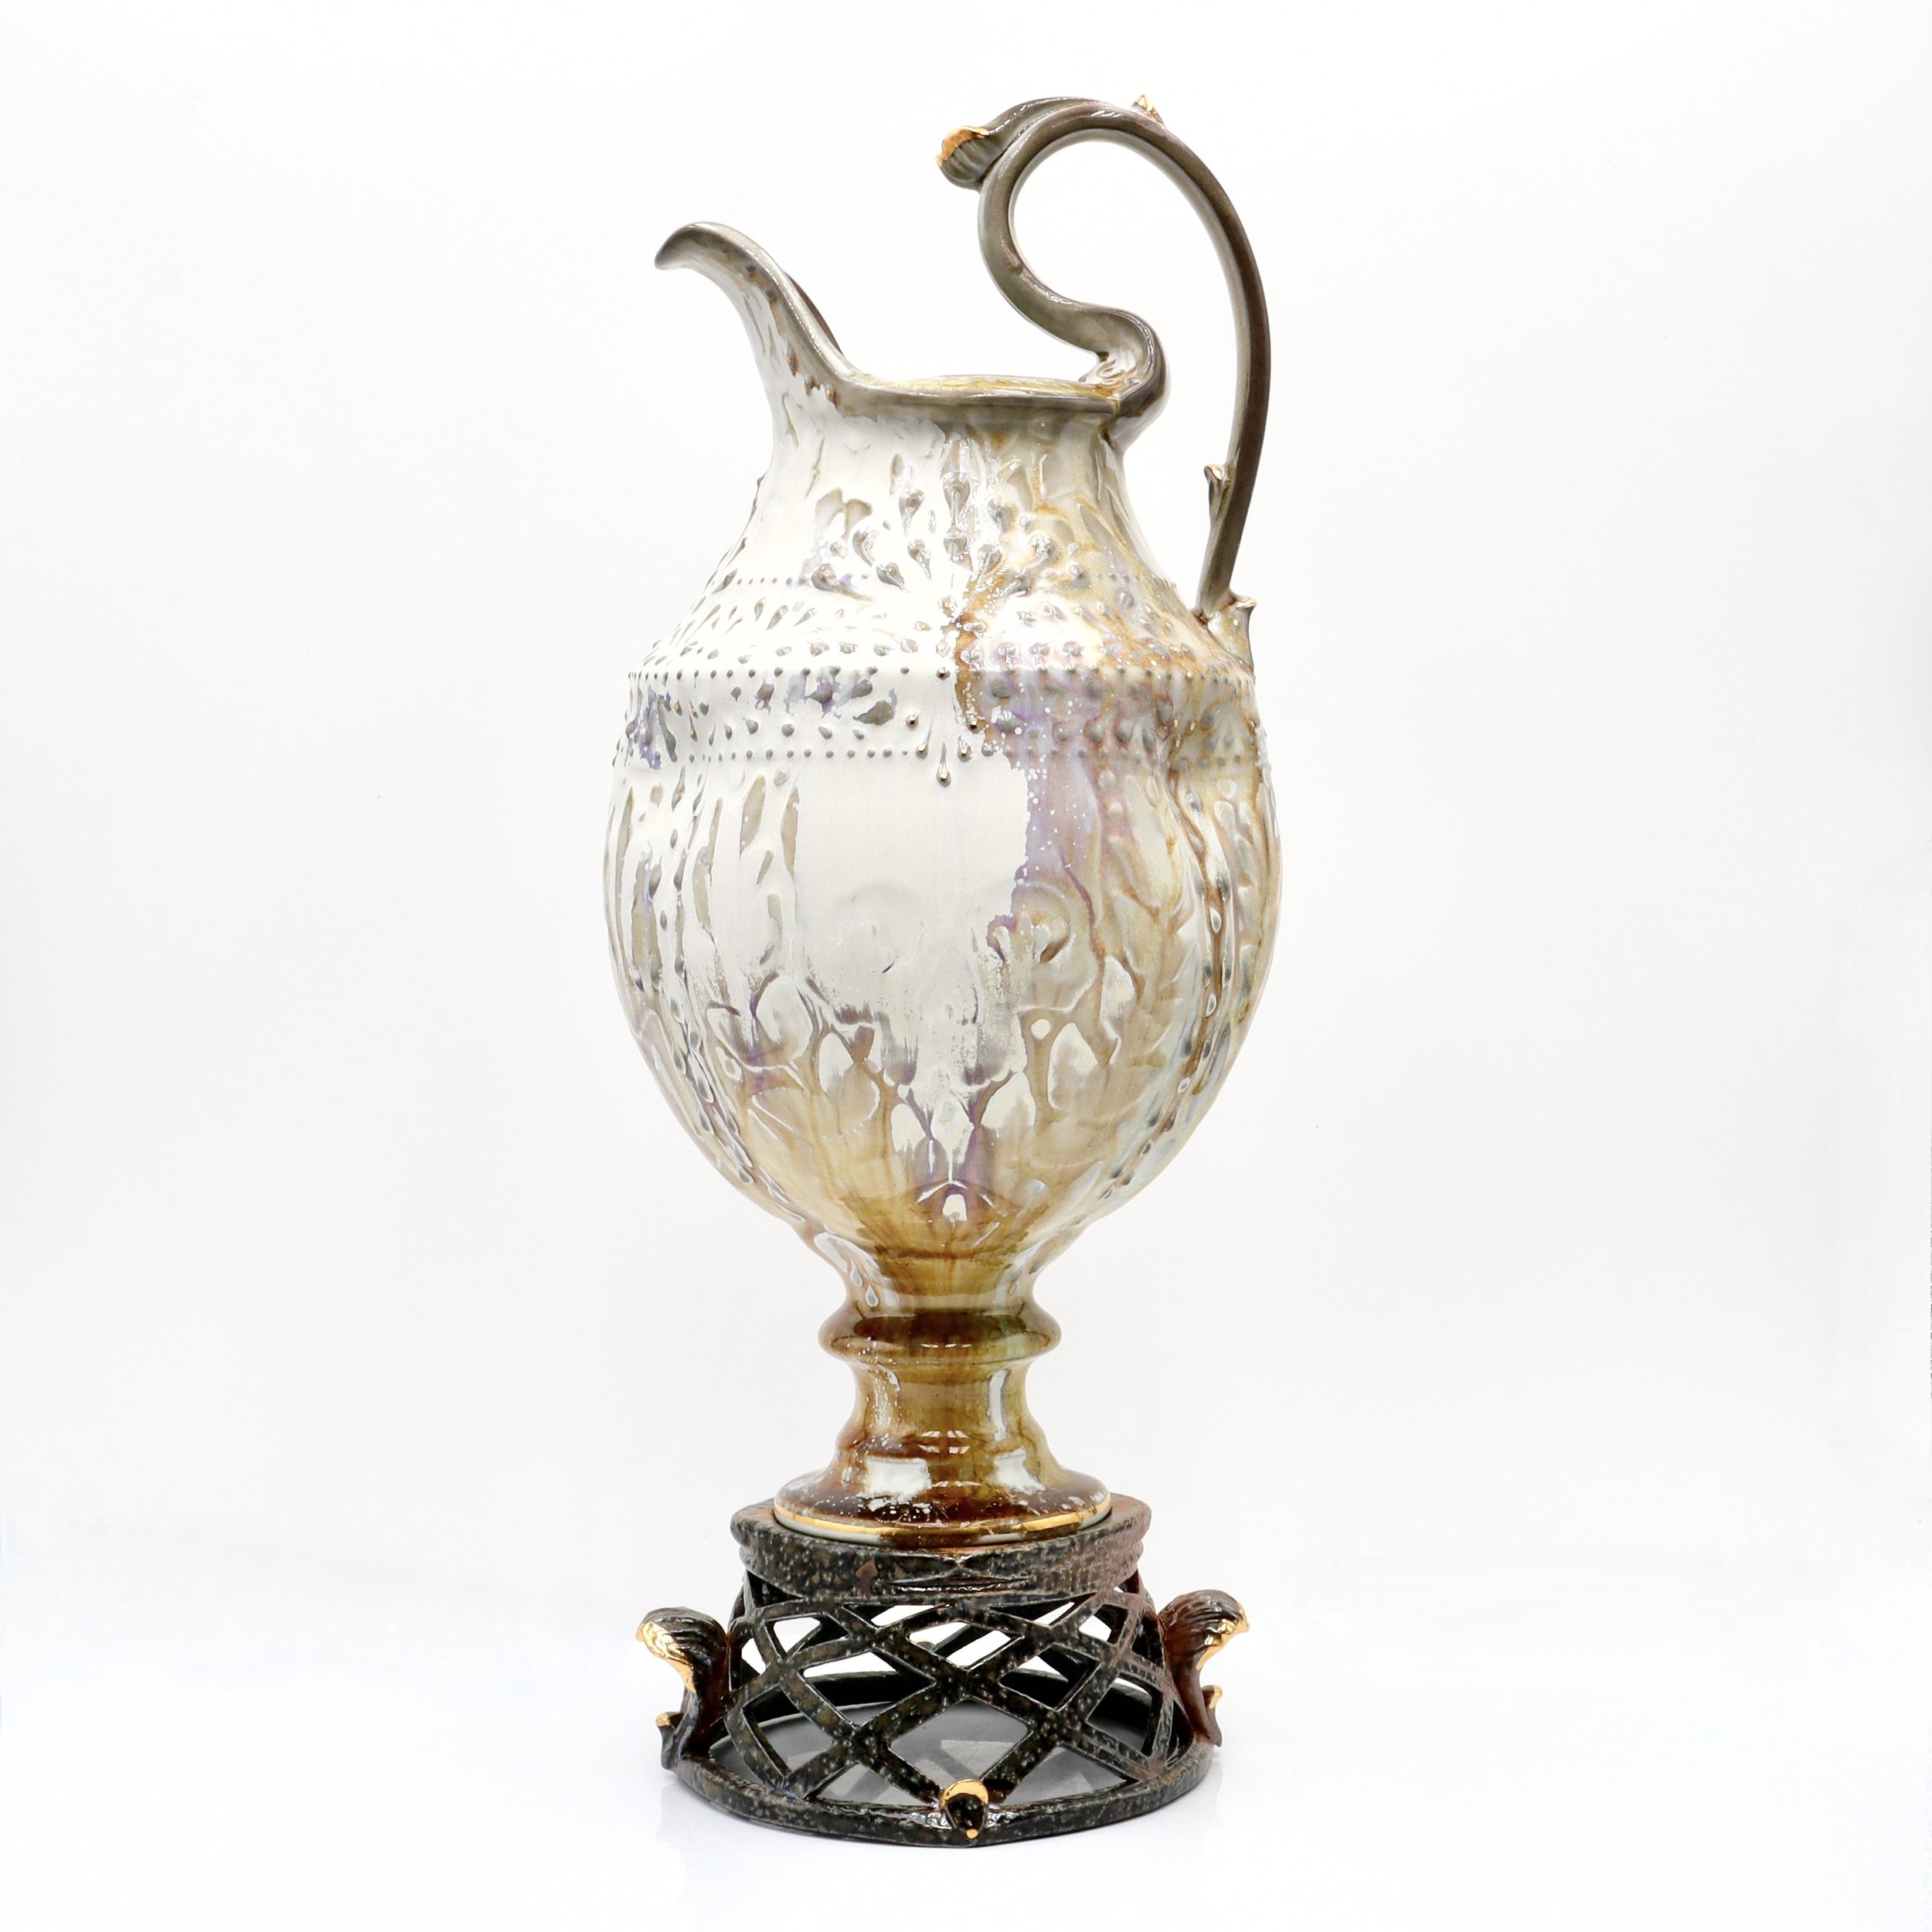  Ceramic vase by Mike Stumbras